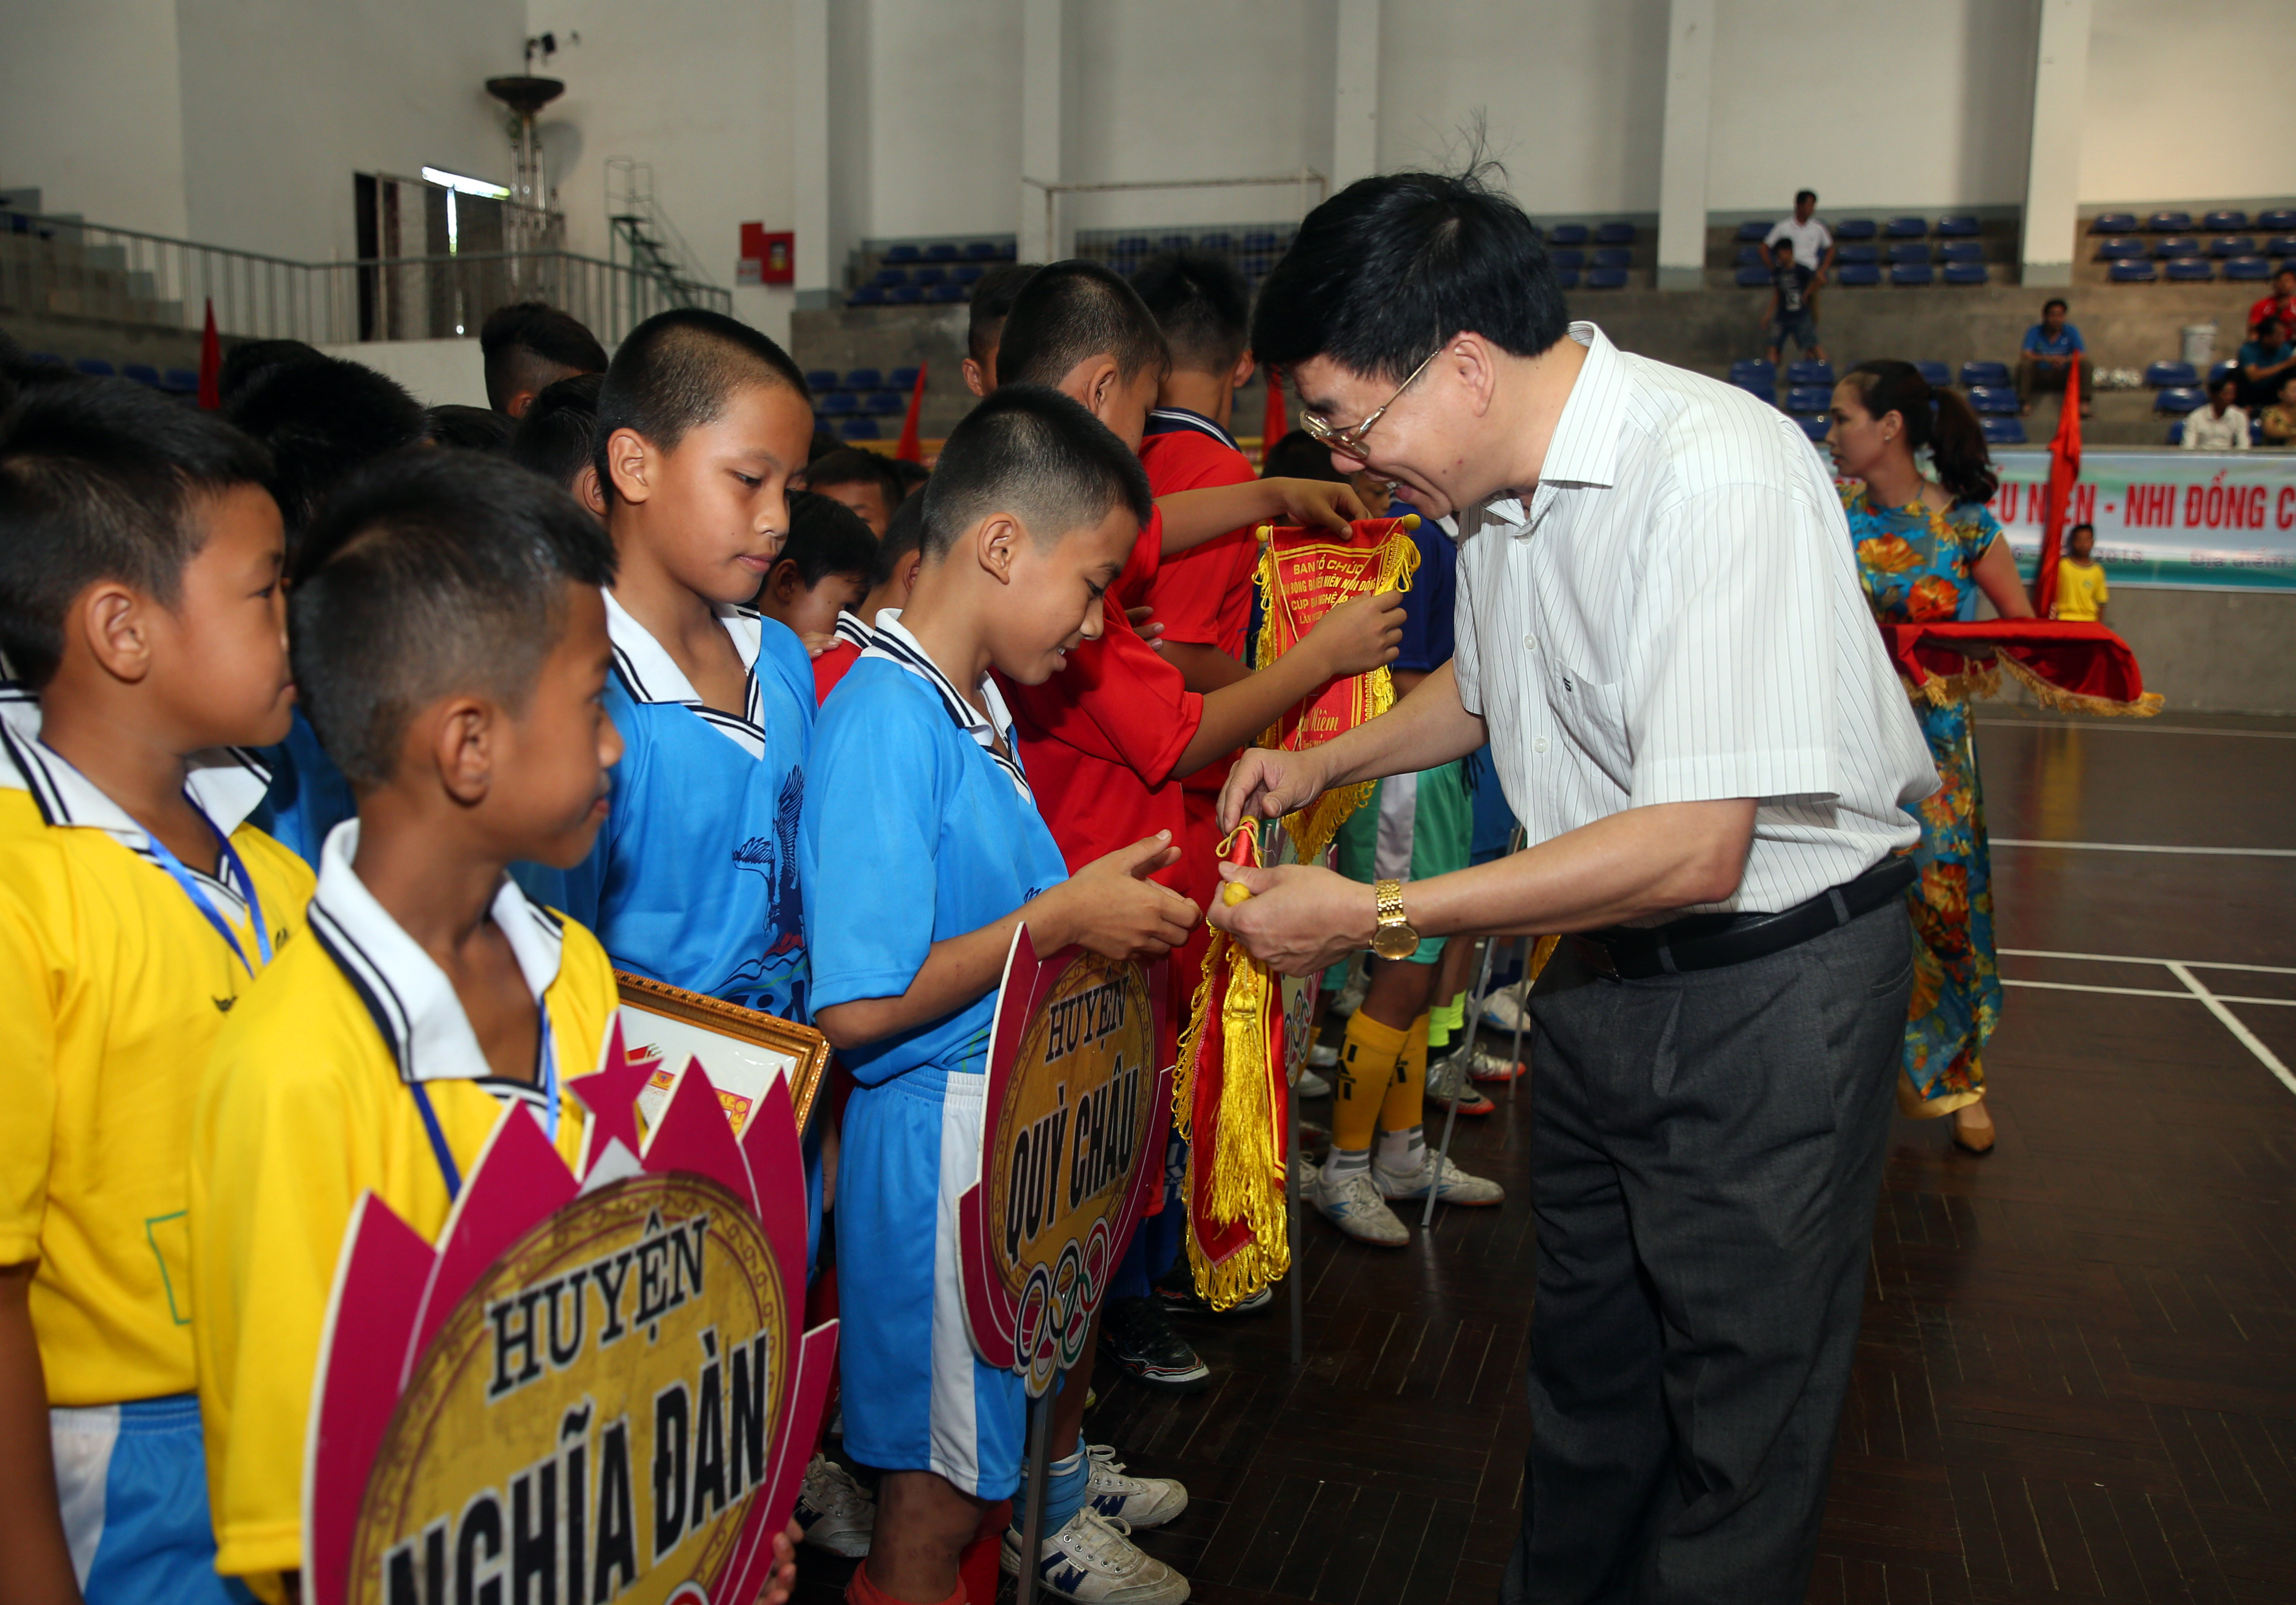 Đồng chí Nguyễn Văn Thông - Phó Bí thư Tỉnh ủy trao cờ lưu niệm cho các đội tuyển tham dự giải lần thứ 22. Ảnh: Hồ Phương